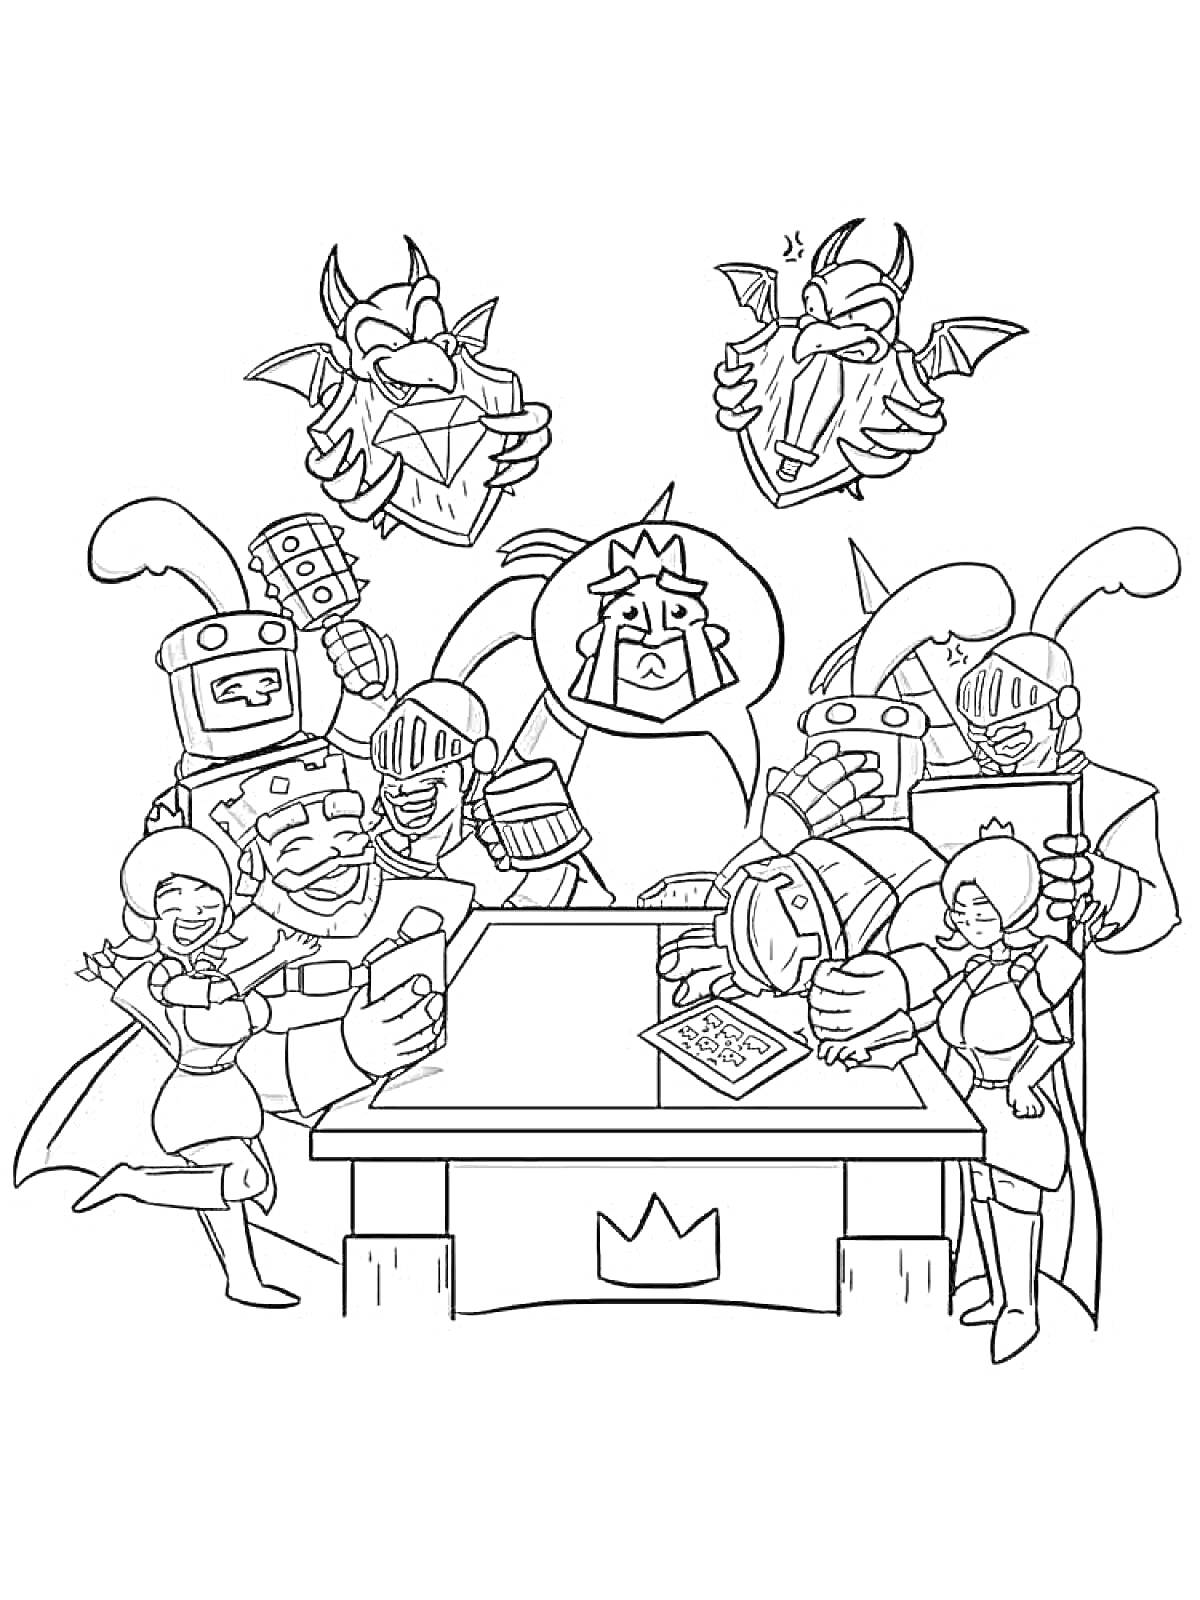  Персонажи из Клеш Роял вокруг стола с картами 